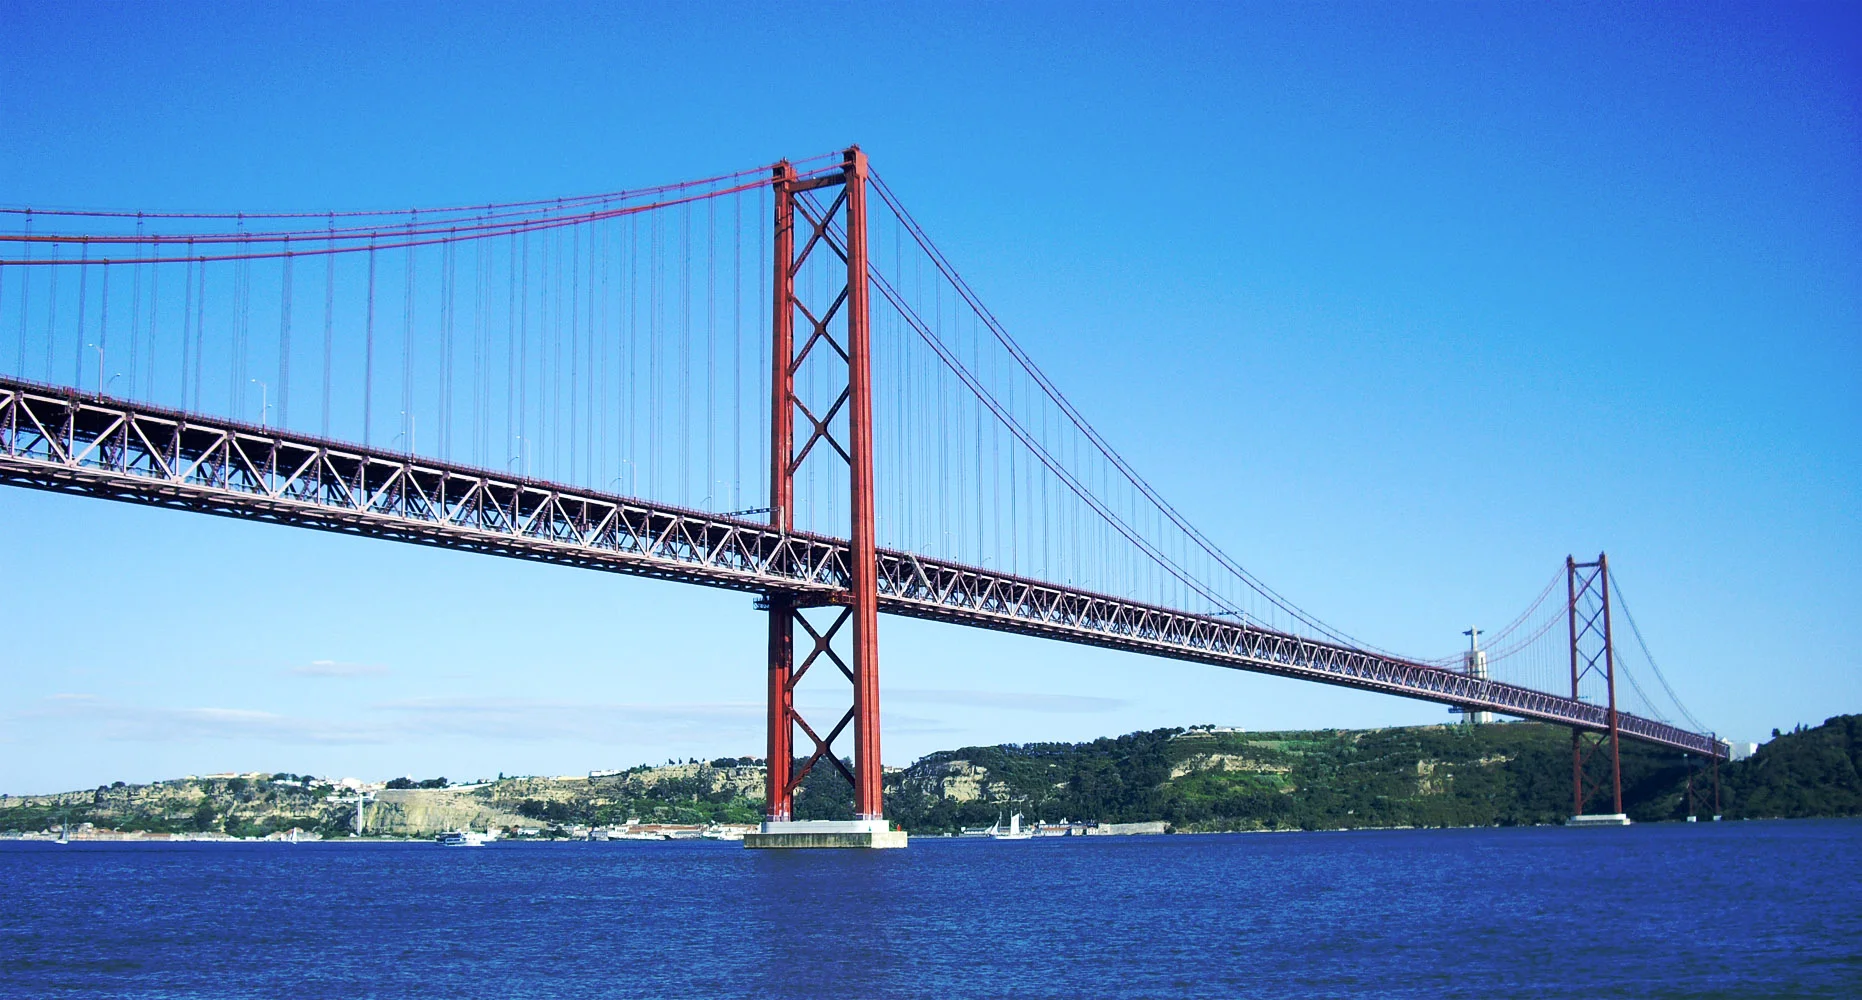 Cây cầu 25 tháng 4 nổi tiếng tại Lisbon